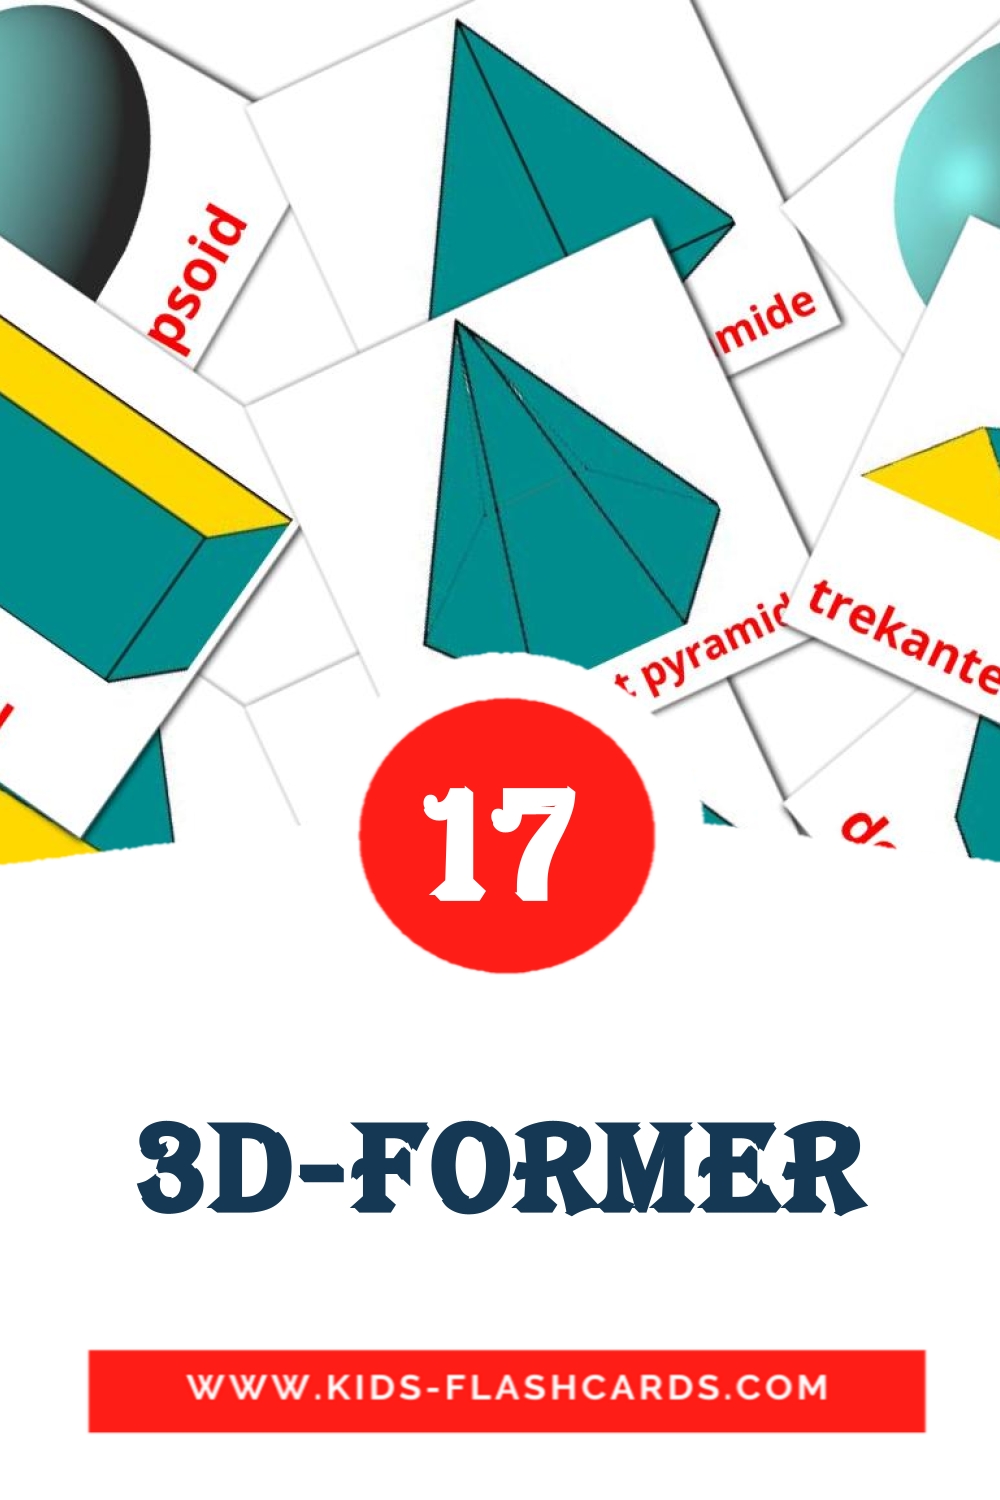 17 3D-former fotokaarten voor kleuters in het noors